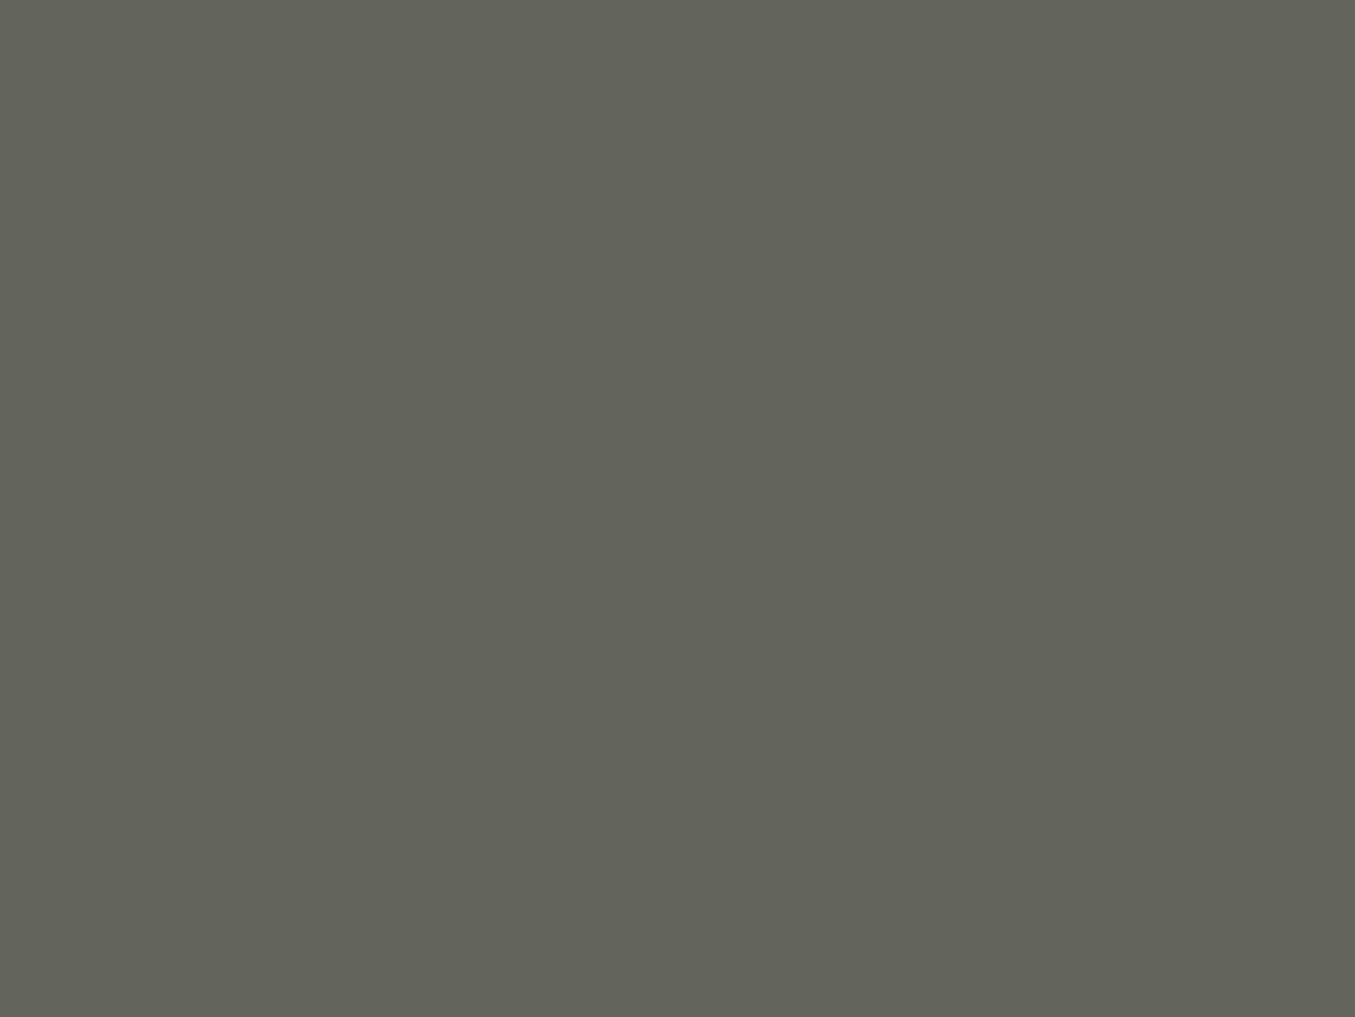 Иван Шишкин. Первый снег. 1875. Национальный музей «Киевская картинная галерея», Киев, Украина